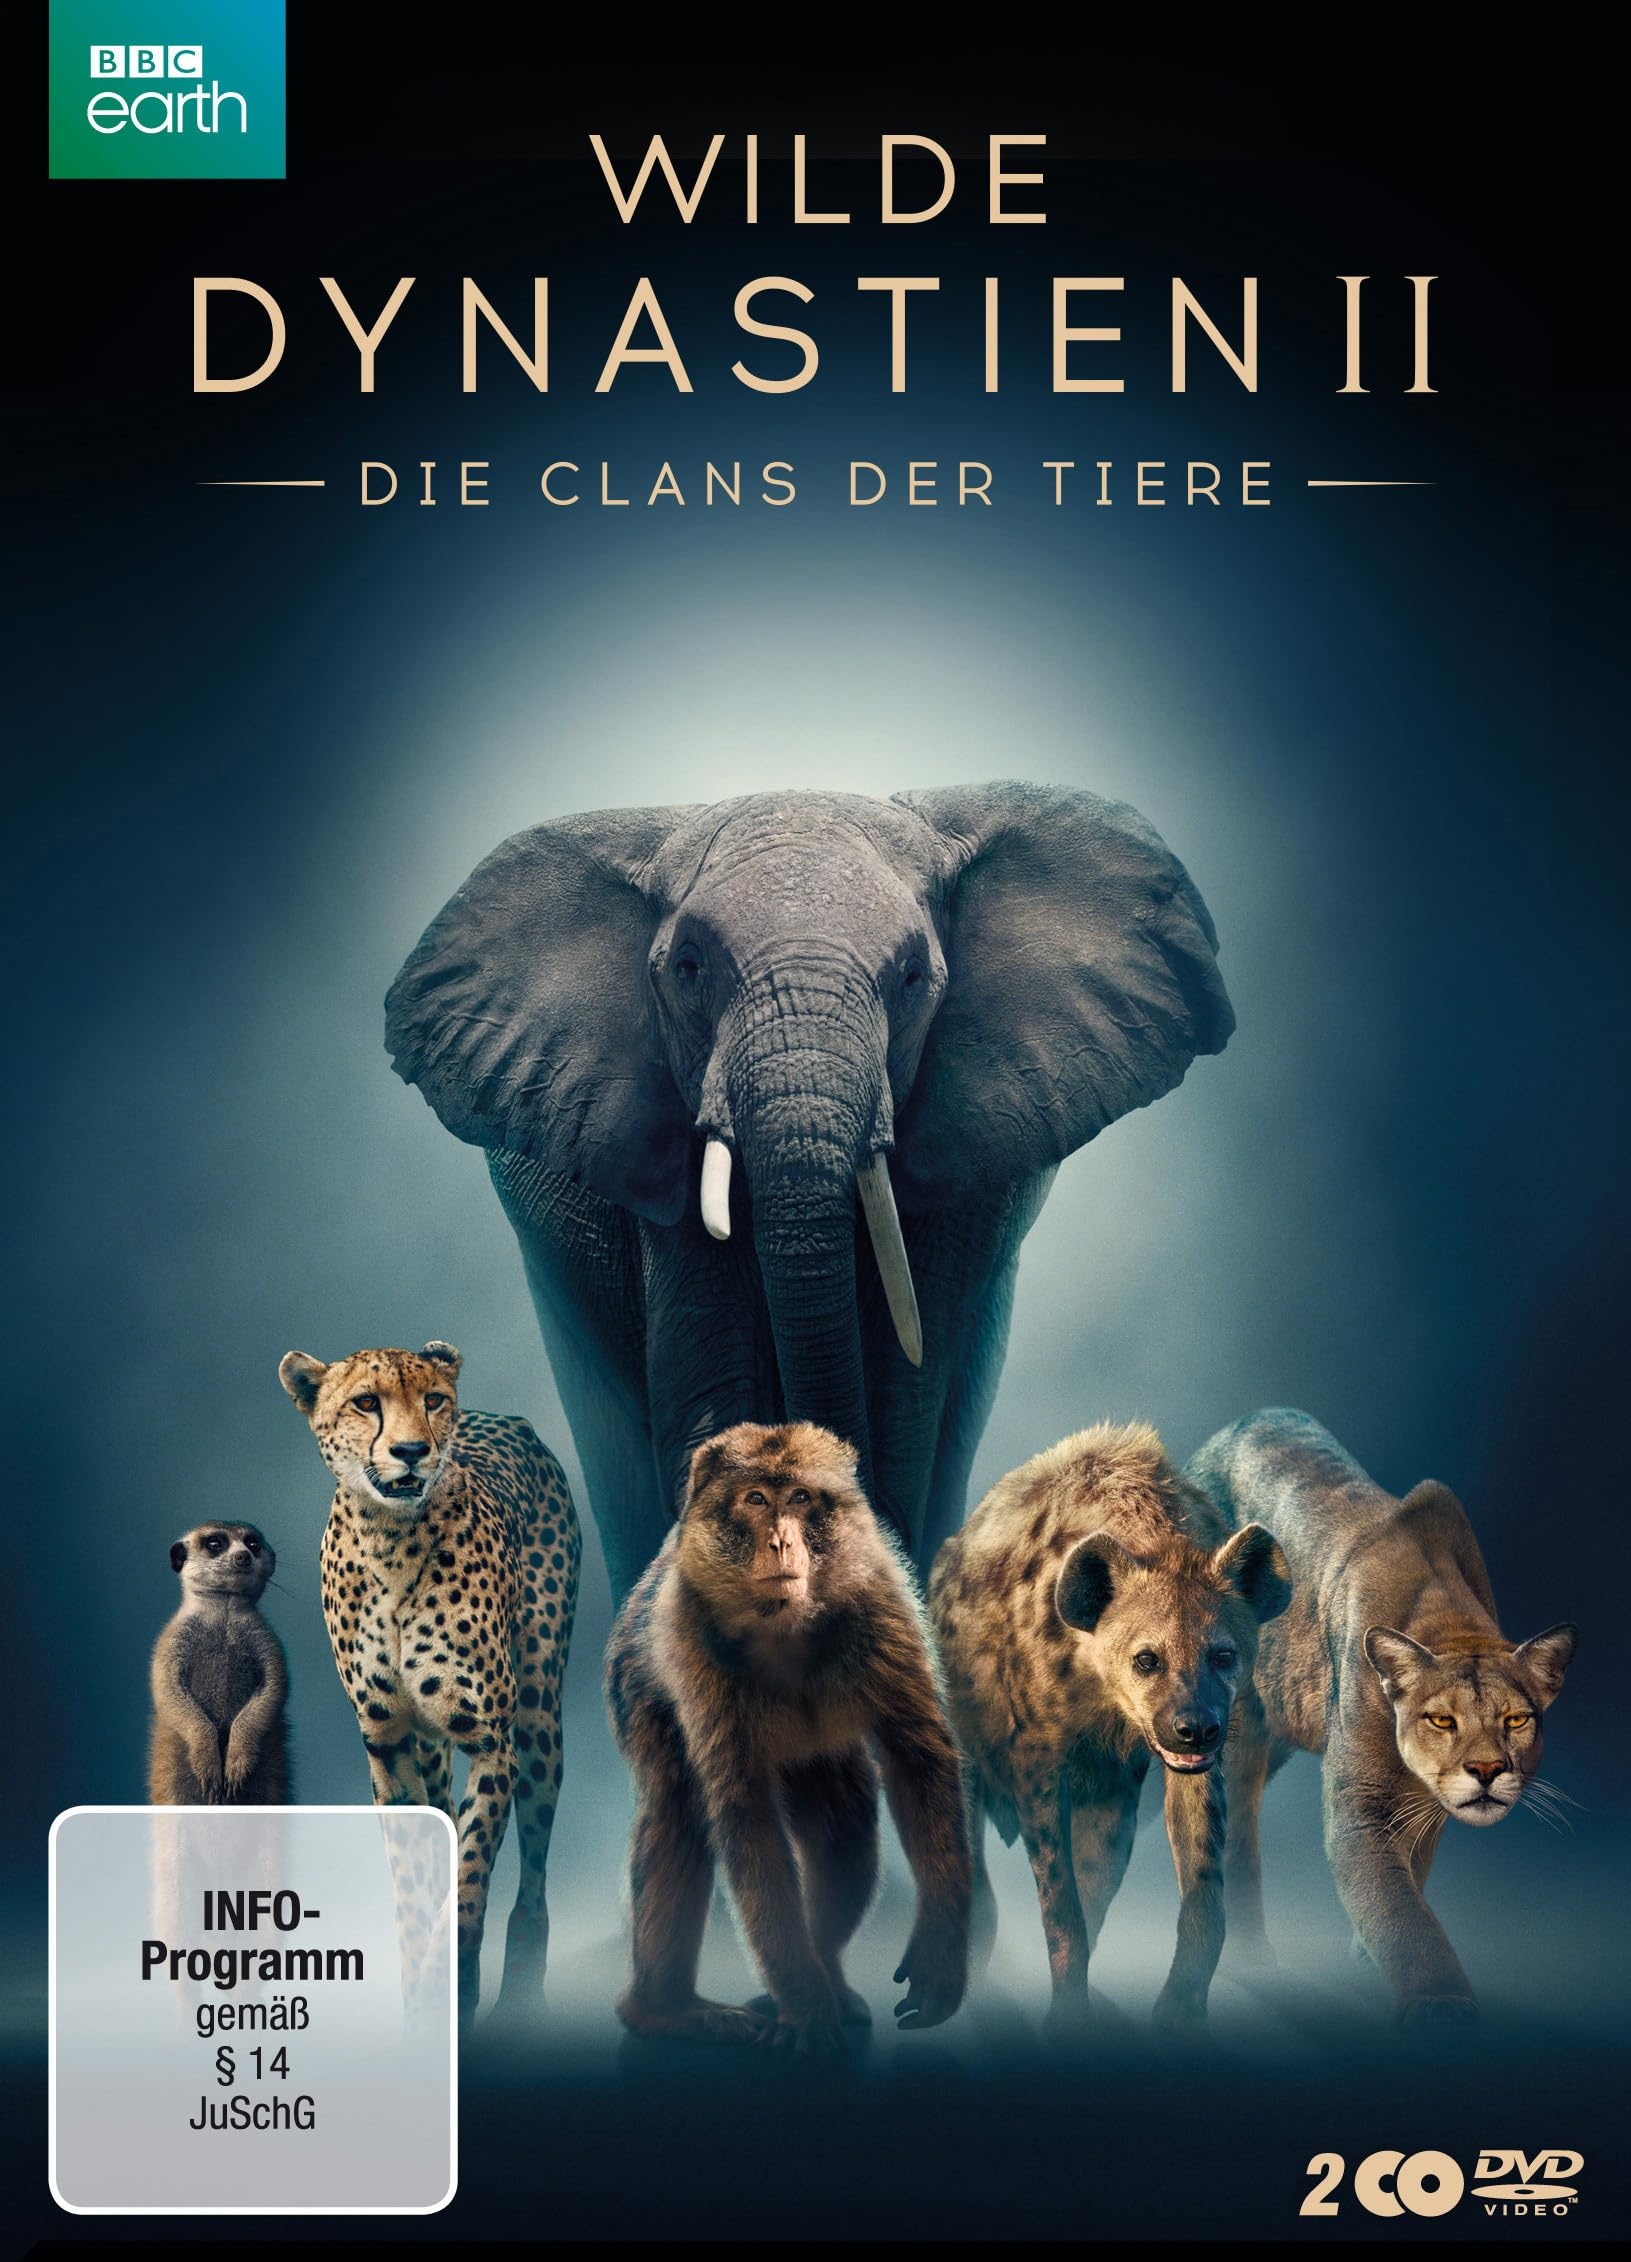 WILDE DYNASTIEN II - Die Clans der Tiere [2 DVDs] (Neu differenzbesteuert)